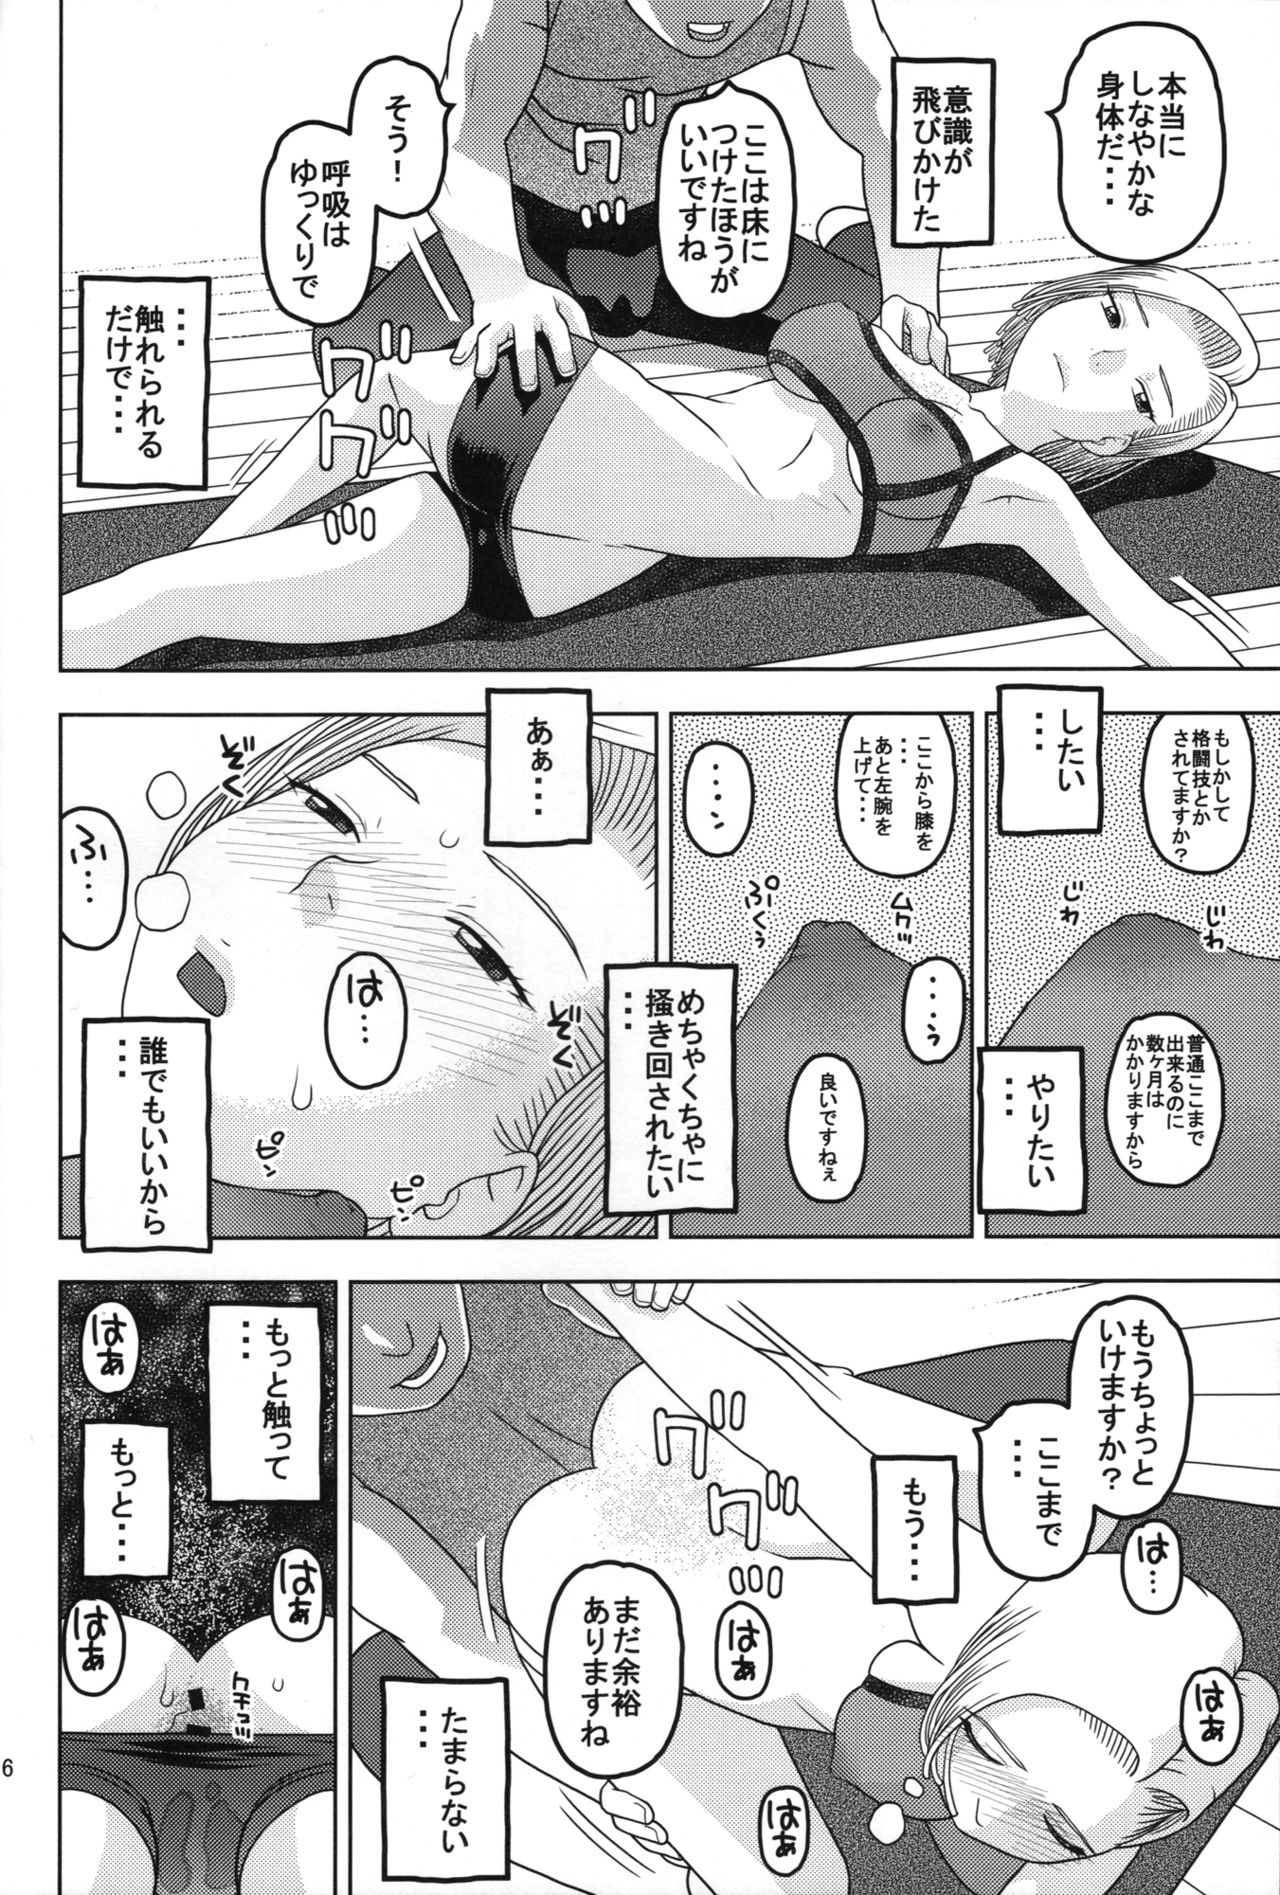 (COMIC1☆11) [スタジオ・ワラビー (にいるまけんじ)] 18号とスポーツジムで性交 (ドラゴンボールZ)